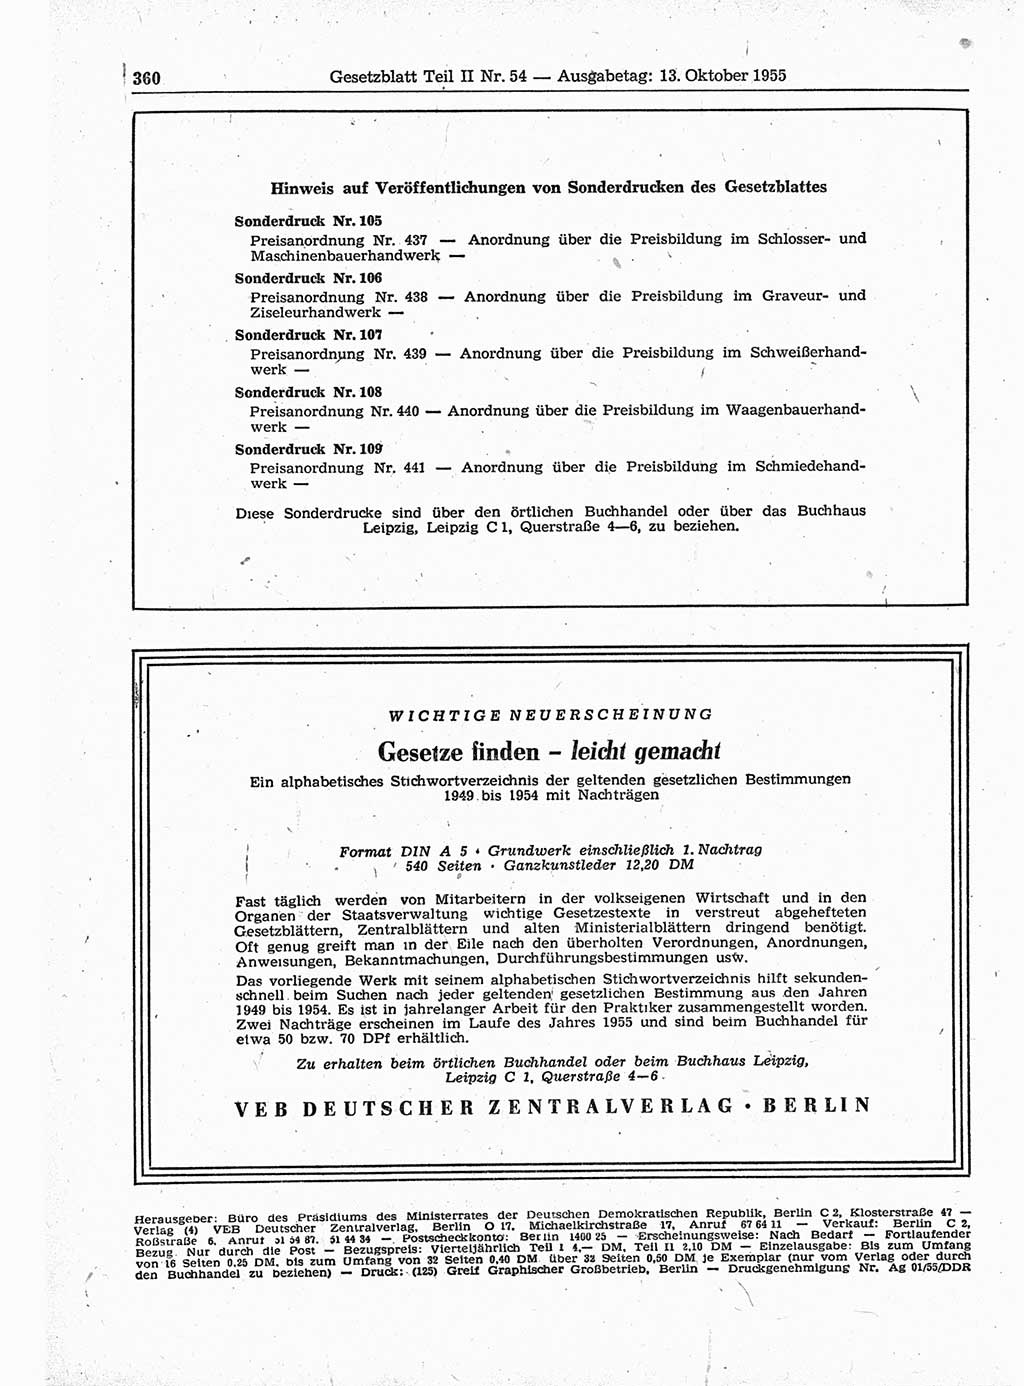 Gesetzblatt (GBl.) der Deutschen Demokratischen Republik (DDR) Teil ⅠⅠ 1955, Seite 360 (GBl. DDR ⅠⅠ 1955, S. 360)